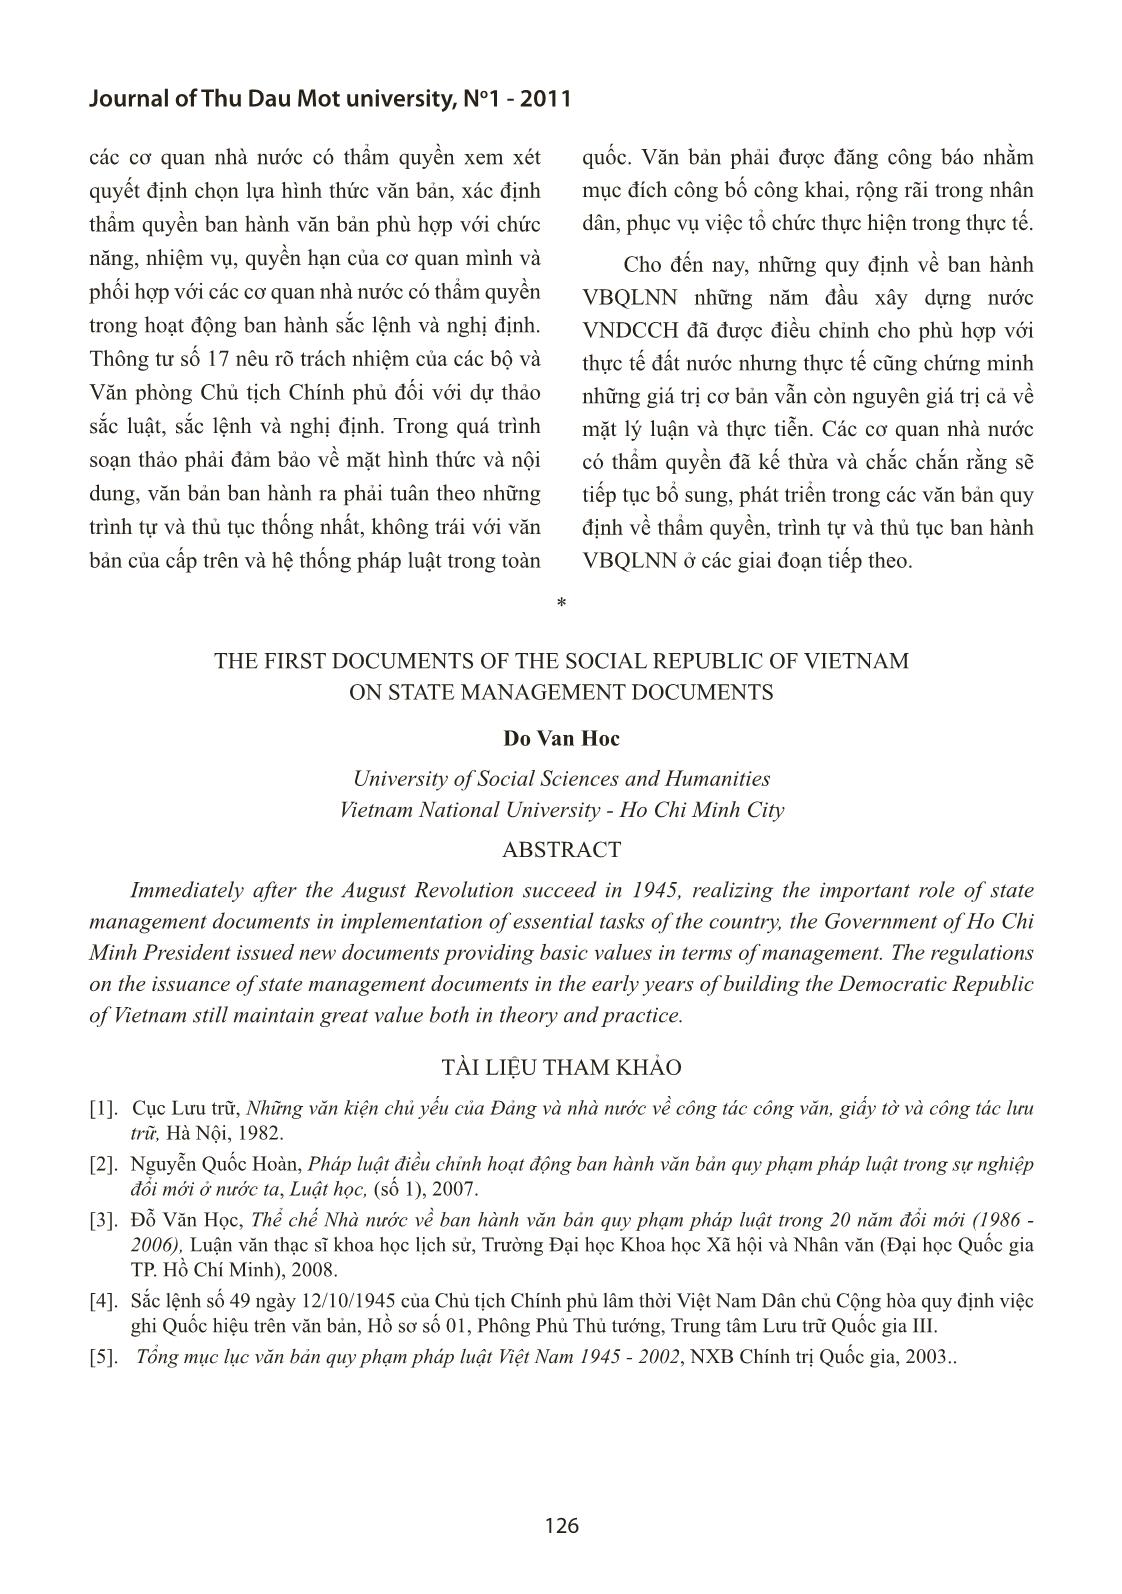 Những văn bản đầu tiên của nước Việt Nam dân chủ cộng hòa về văn bản quản lý nhà nước trang 4